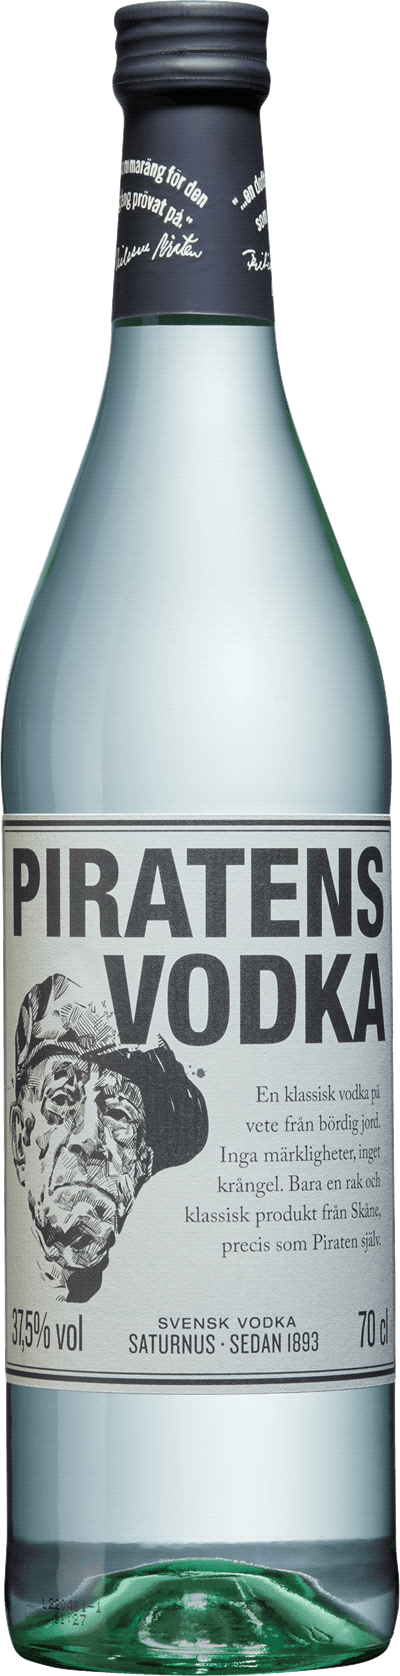 Produktbild för Piratens Vodka